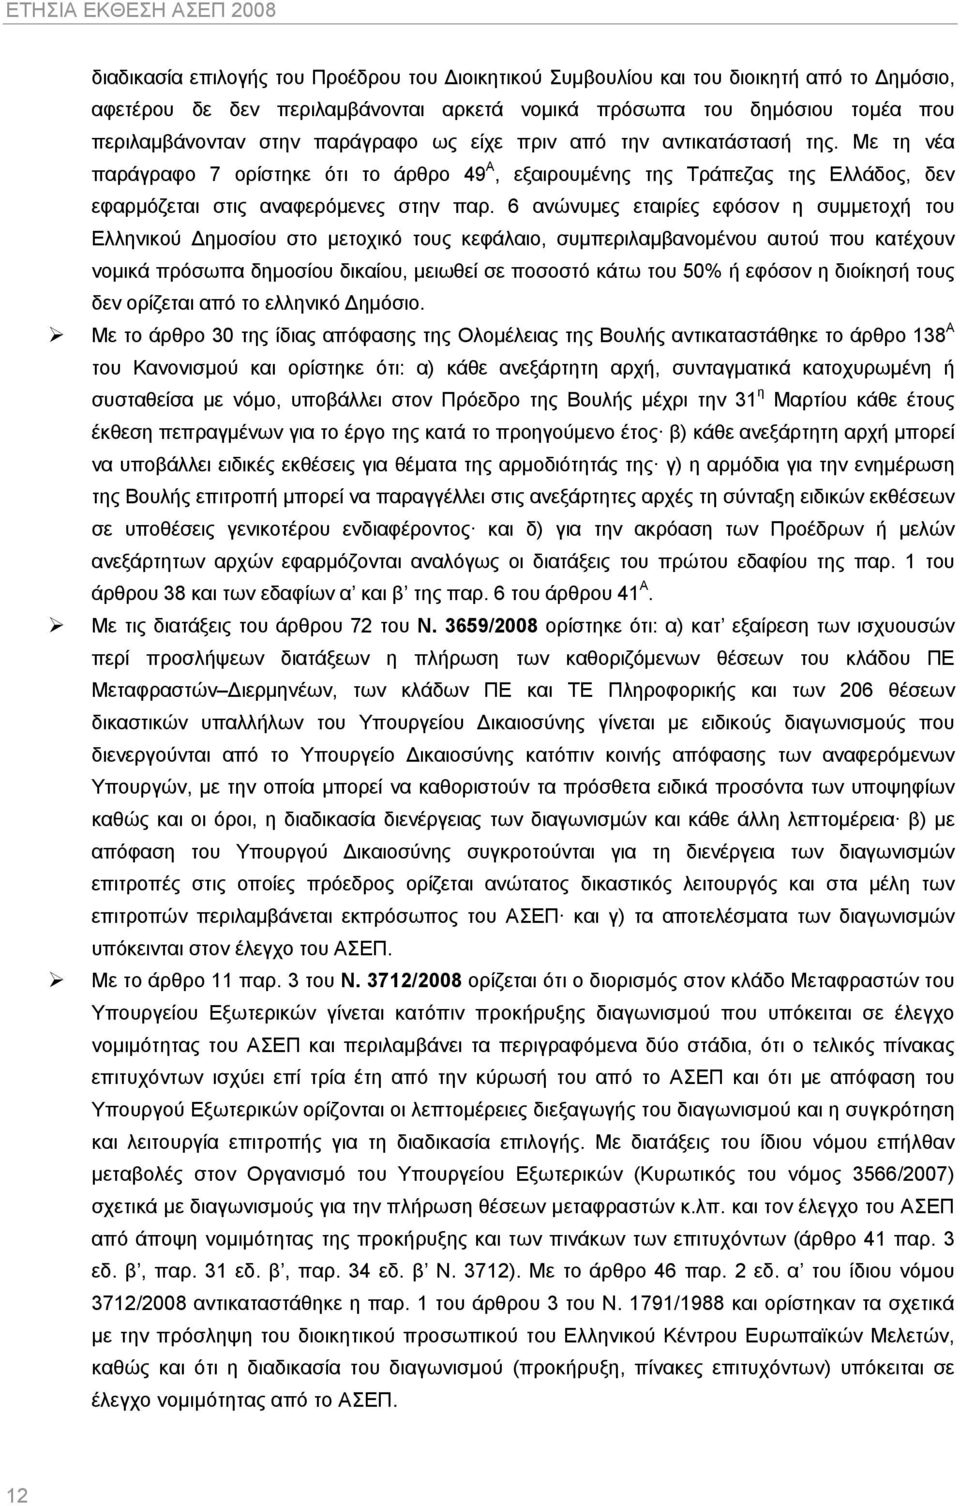 Με τη νέα παράγραφο 7 ορίστηκε ότι το άρθρο 49 Α, εξαιρουμένης της Τράπεζας της Ελλάδος, δεν εφαρμόζεται στις αναφερόμενες στην παρ.